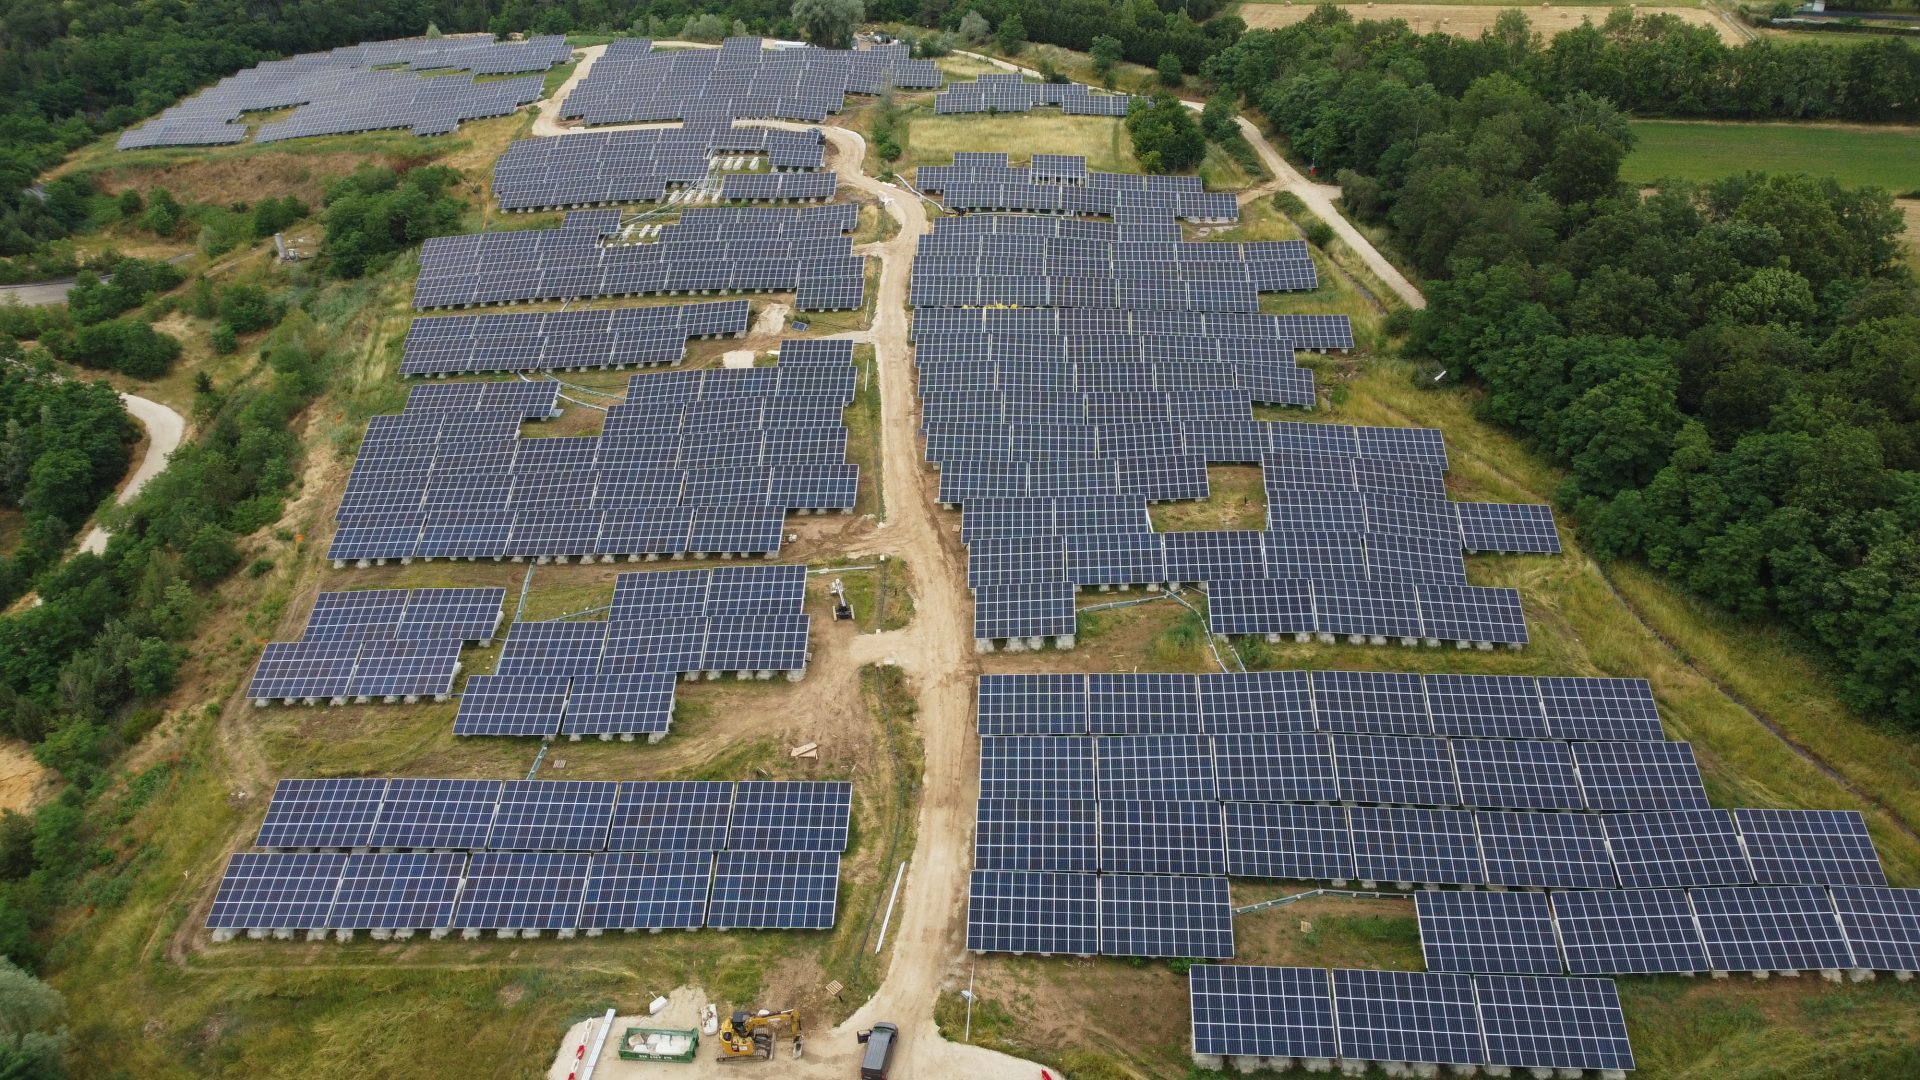 ENGIE Green lance une campagne de financement participatif pour le projet photovoltaïque de Monéteau